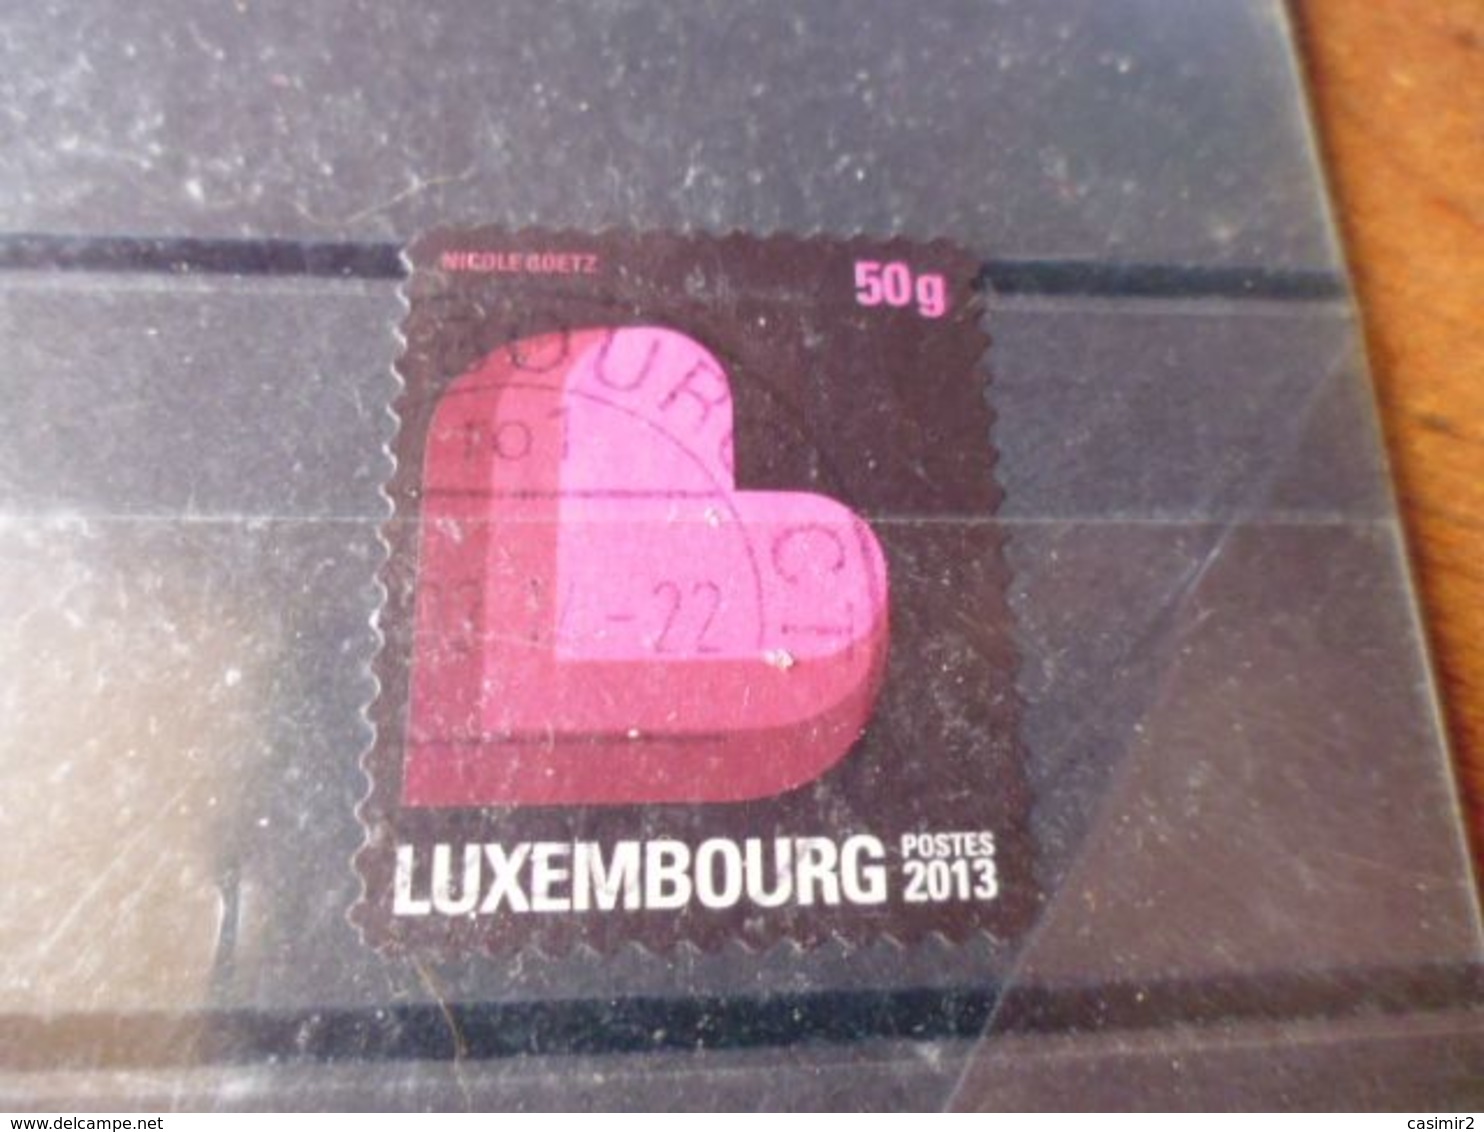 LUXEMBOURG  ANNEE 2013 - Gebruikt